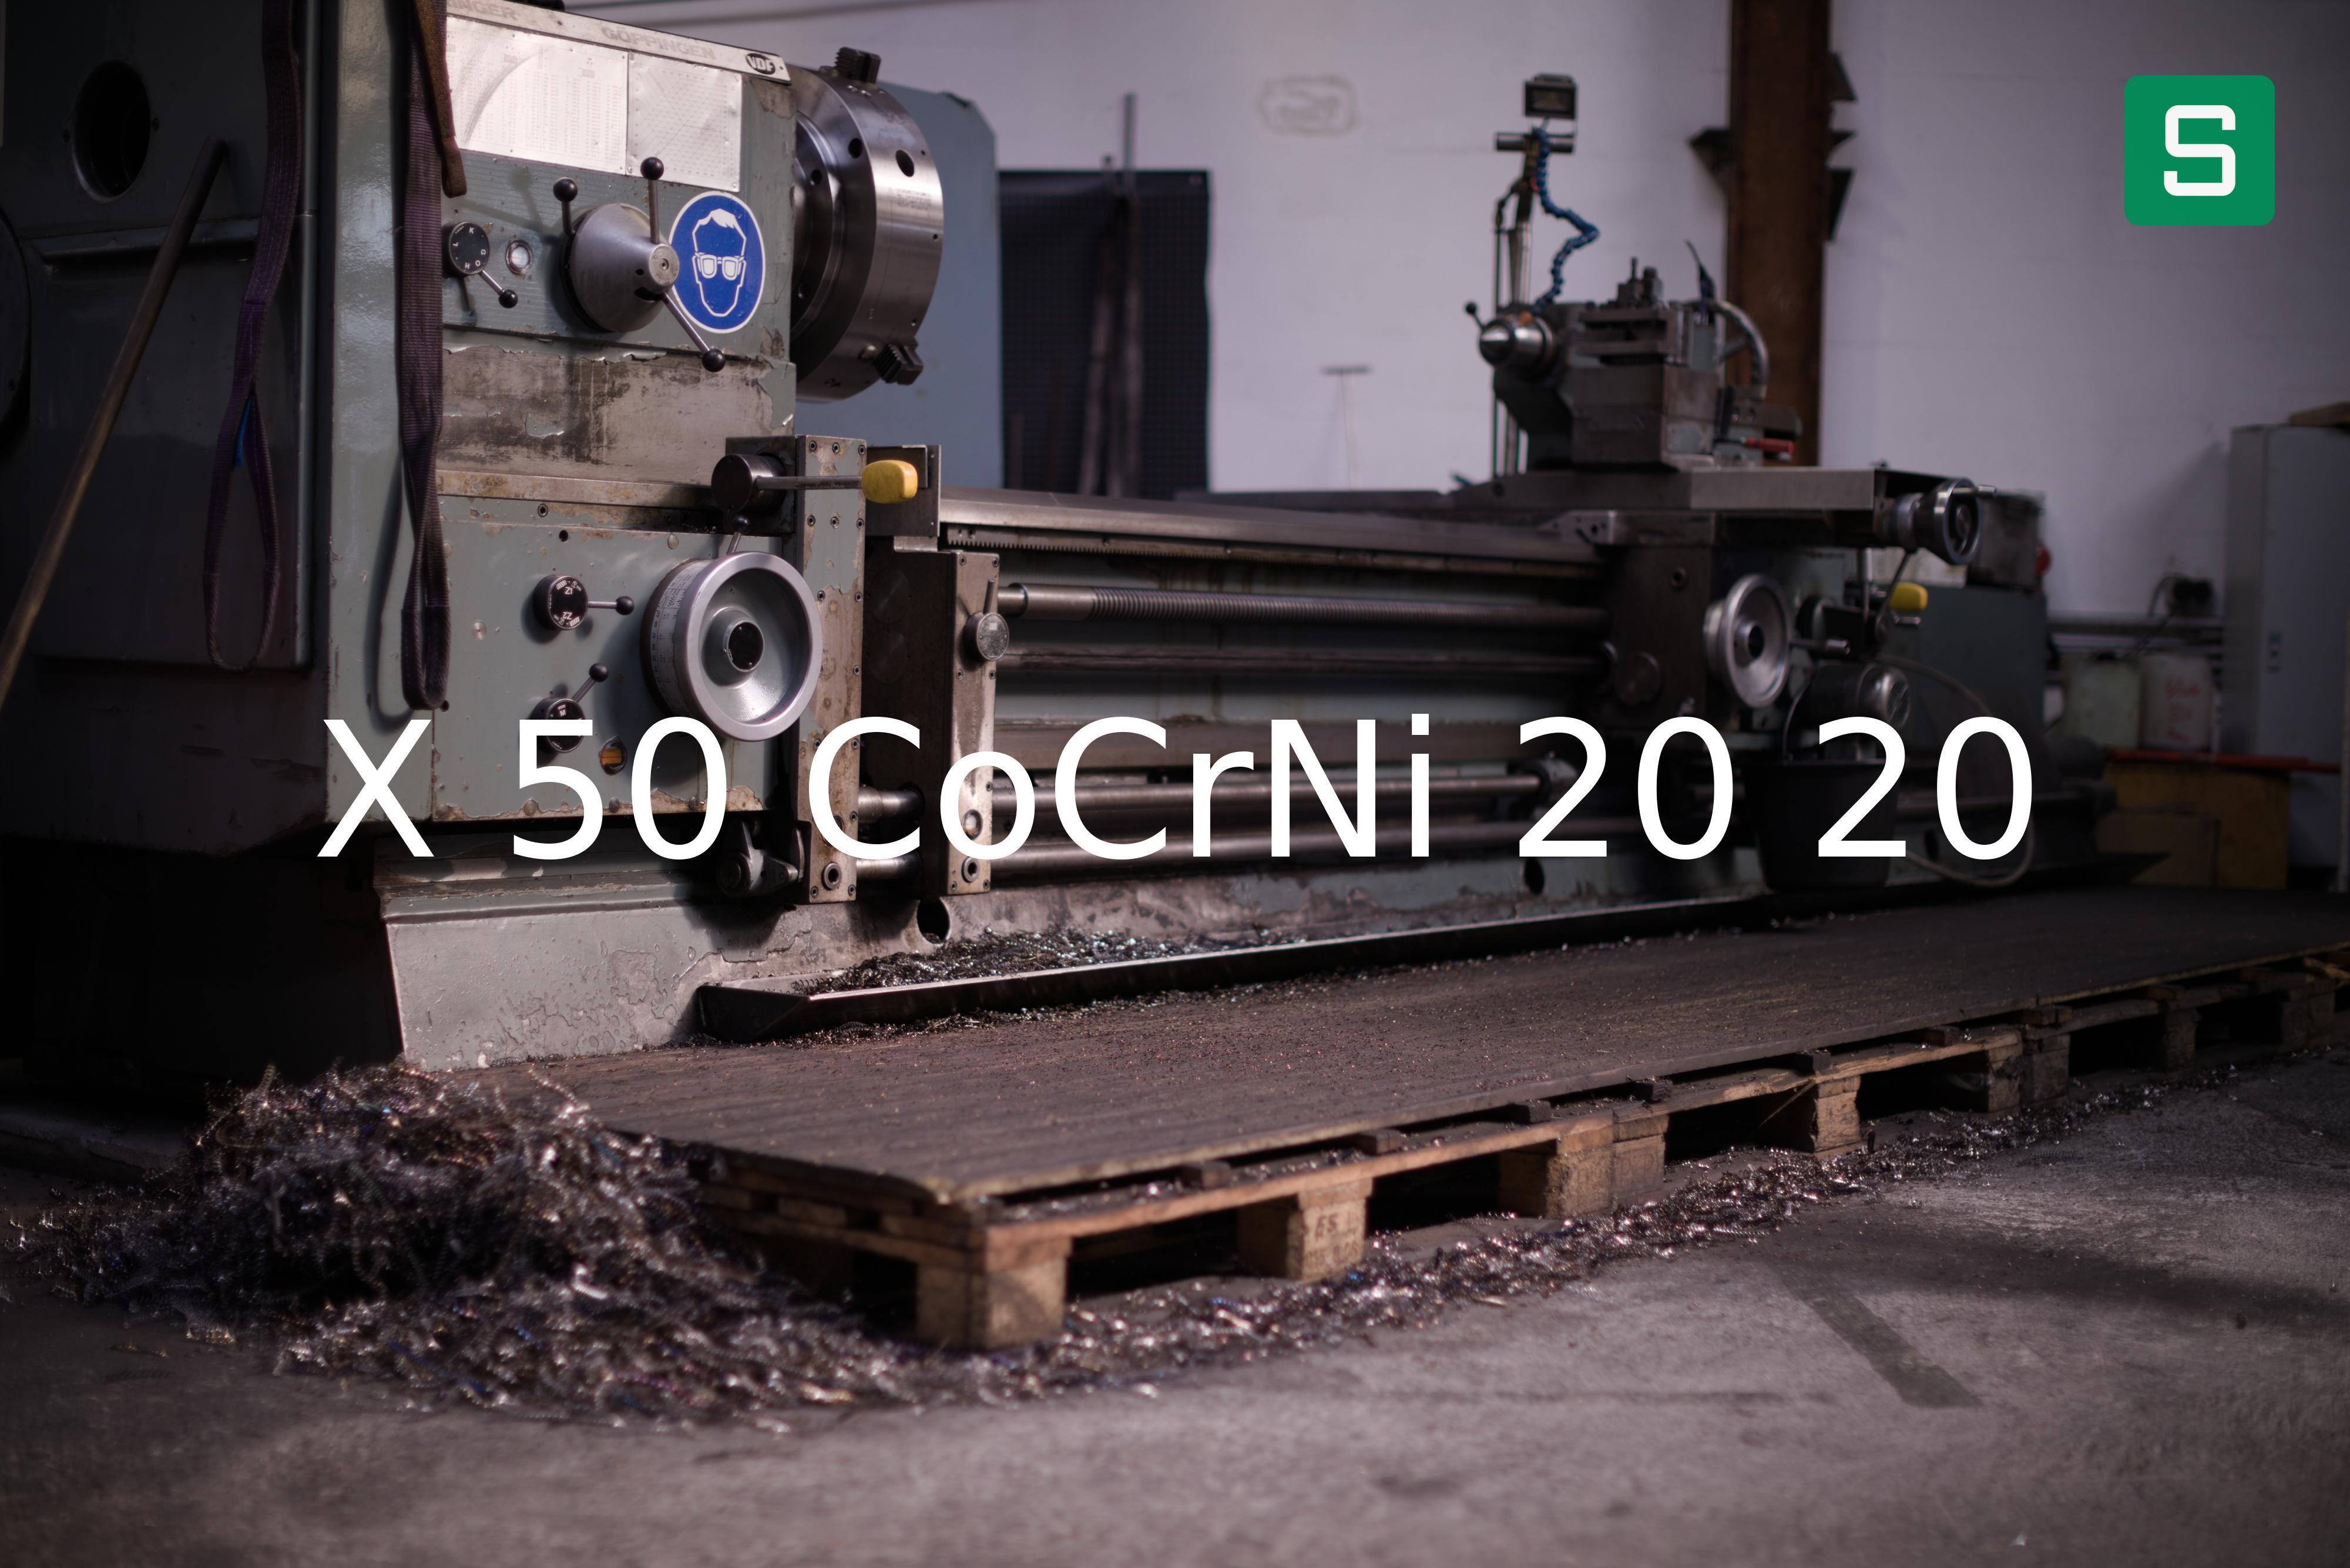 Steel Material: X 50 CoCrNi 20 20